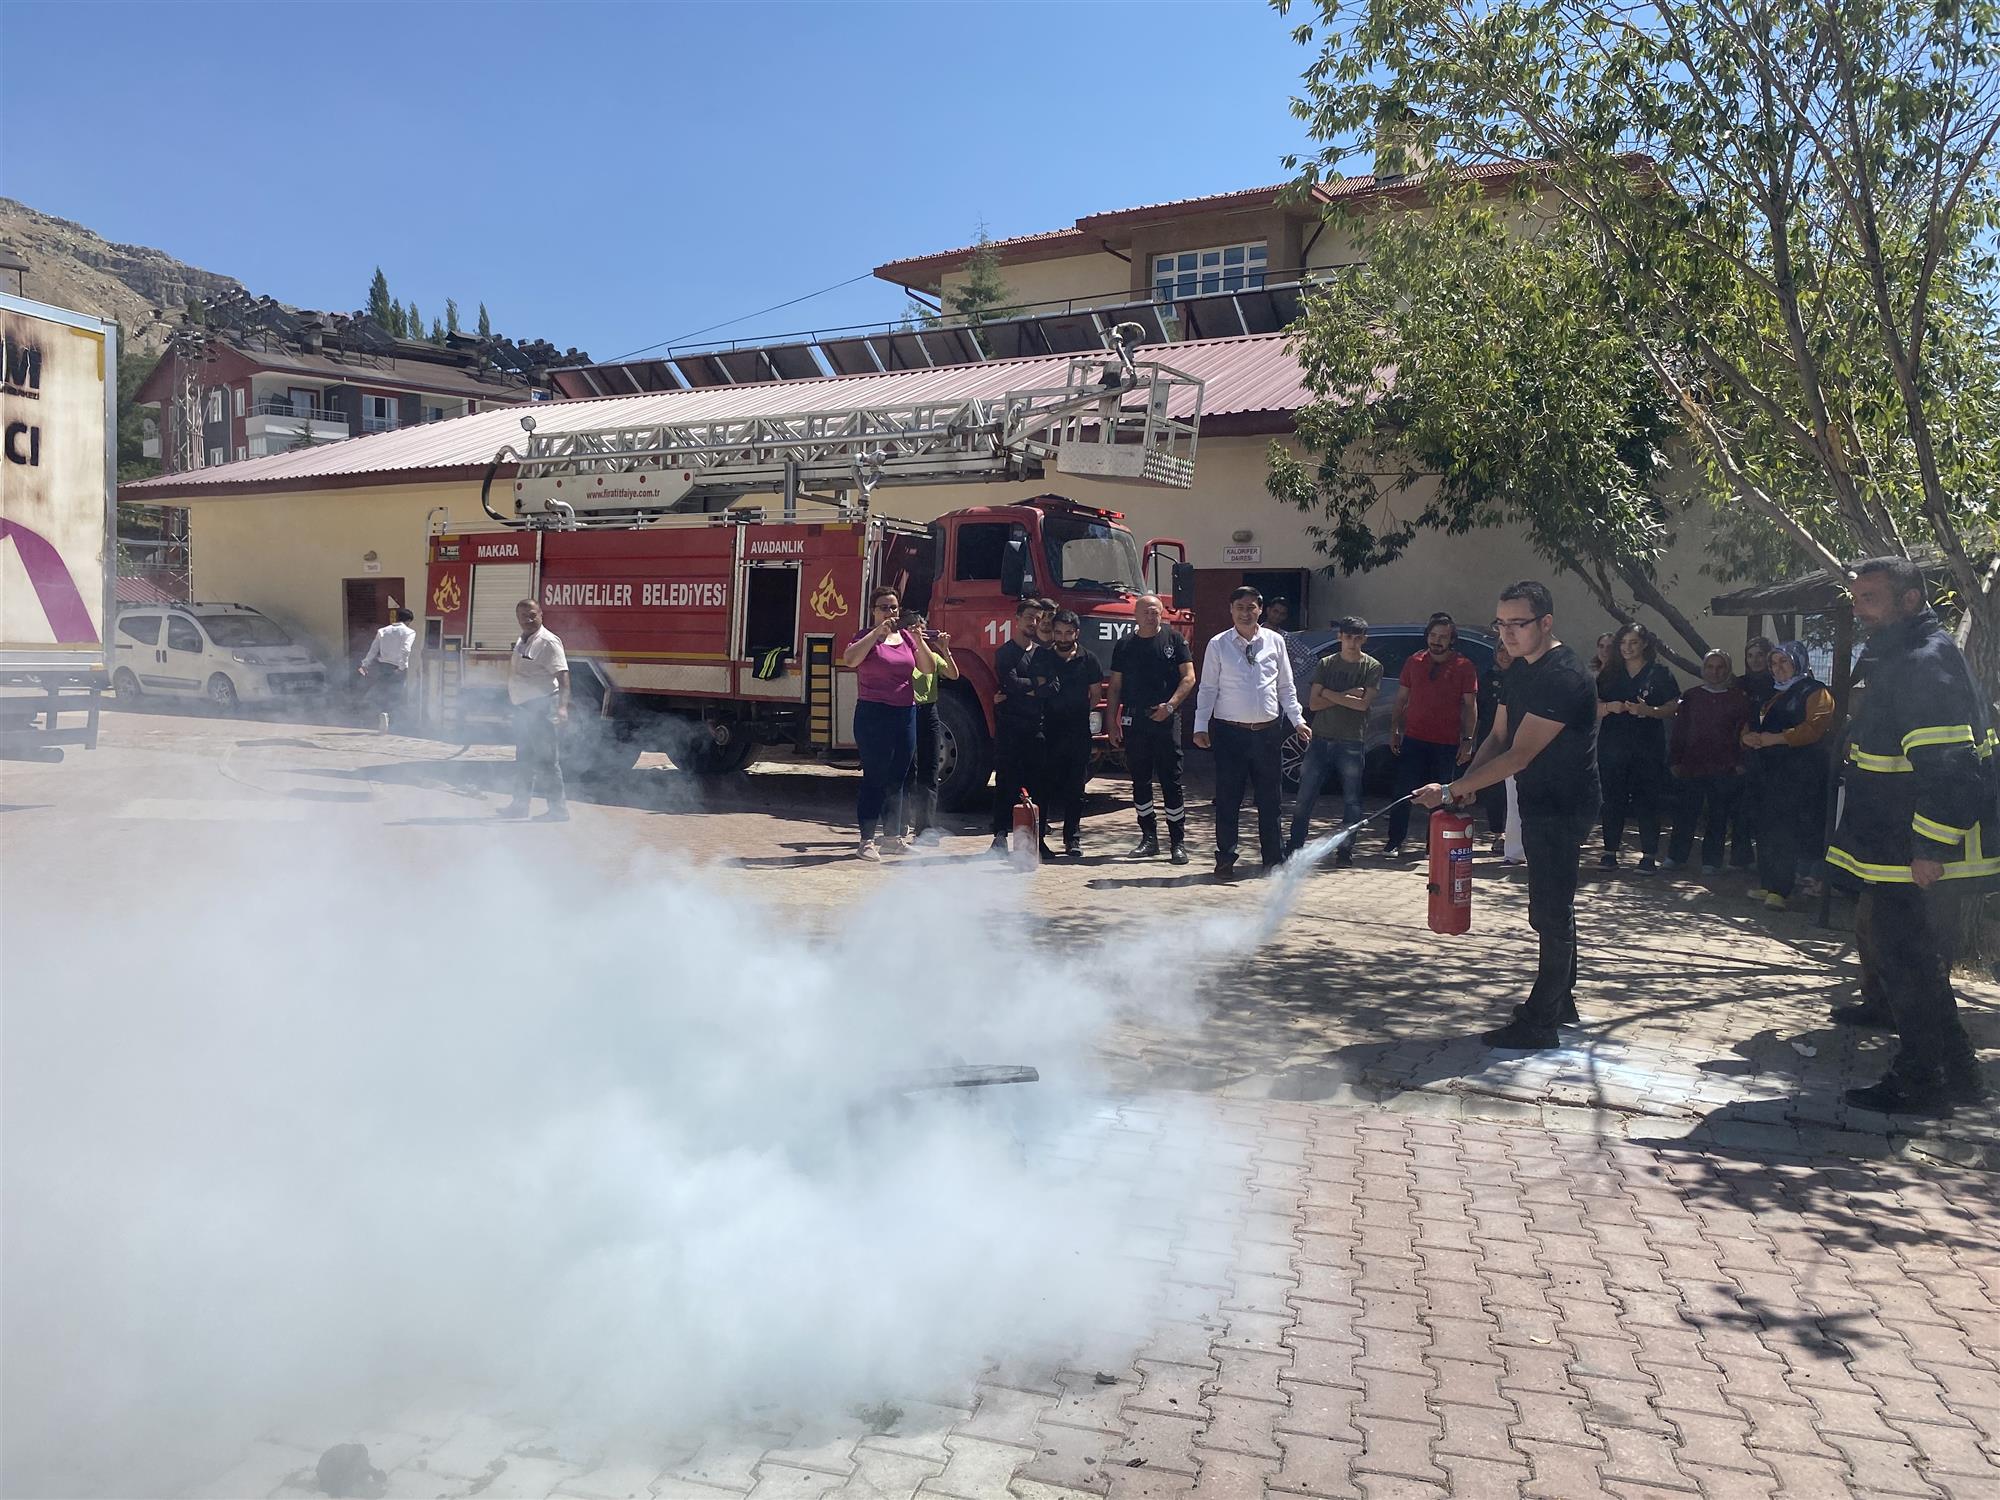 Sarıveliler İlçe Devlet Hastanesinde Sarıveliler Belediyesi itfaiyesi ile birlikte yangın tatbikatı yapıldı.